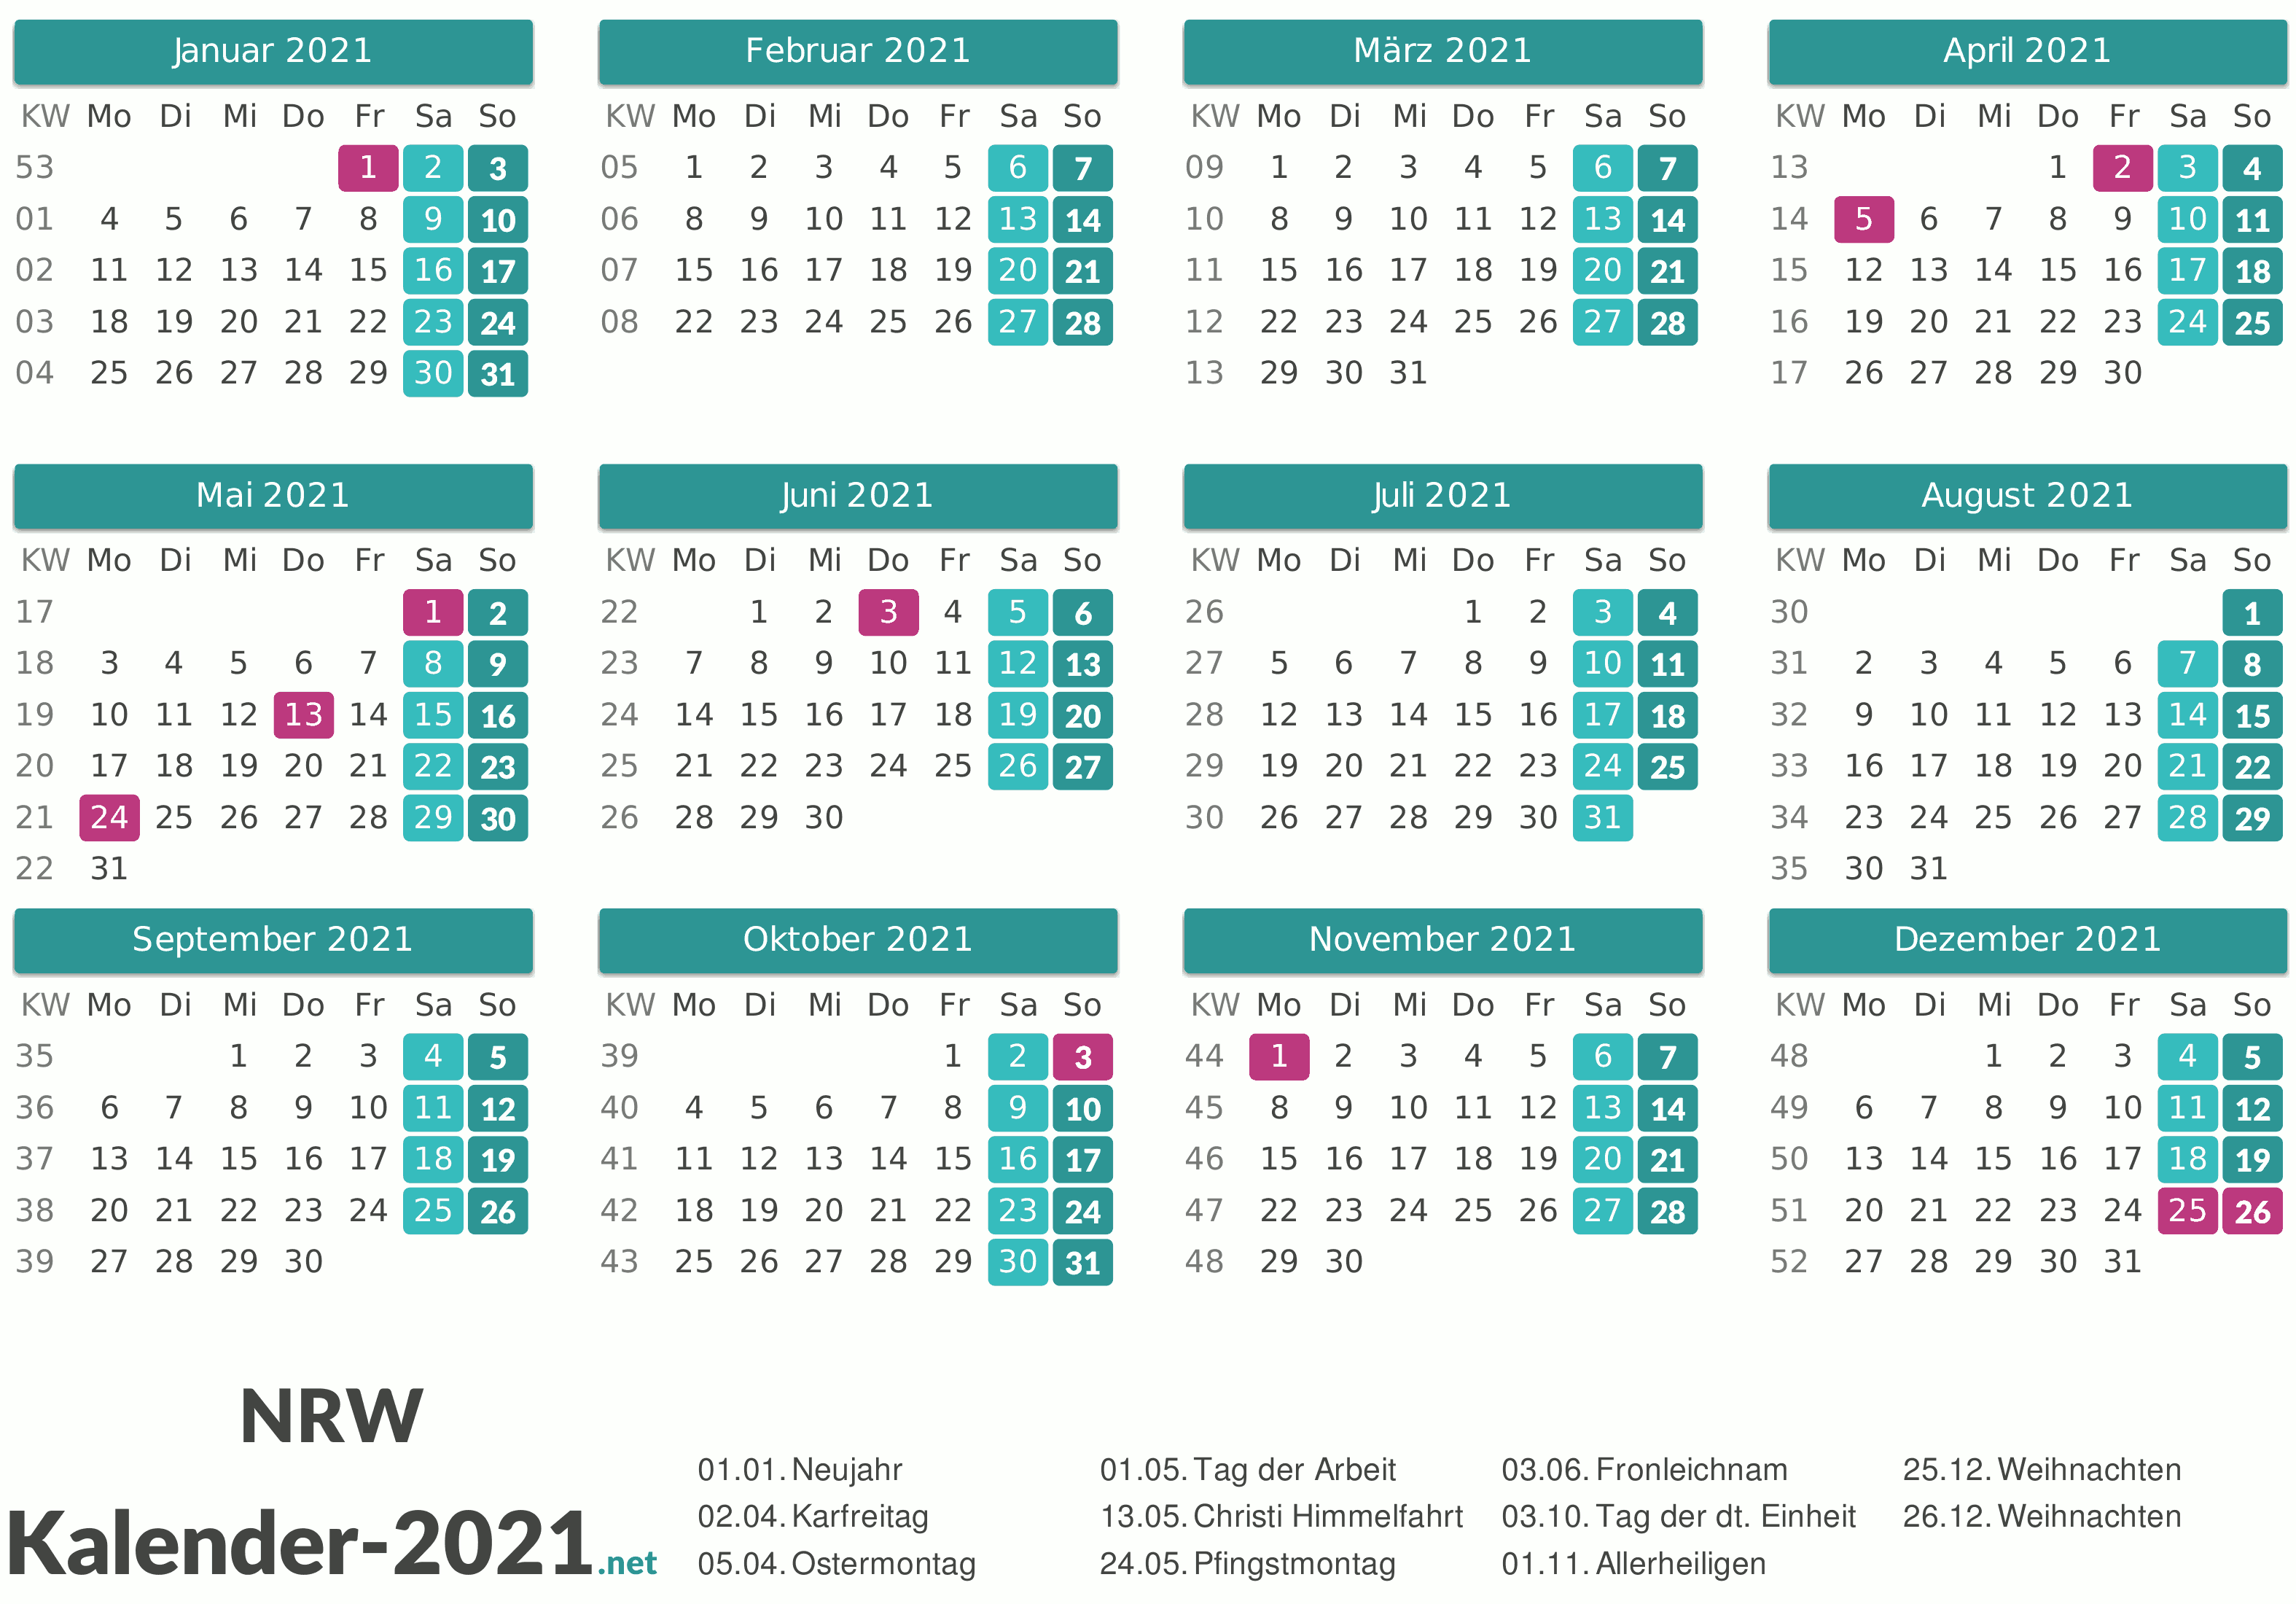 Kalender 2021 Nrw / Kalender 2021 Und 2020 Kostenlos Downloaden Und Ausdrucken 5 Varianten : Sie können die kalender auch auf ihrer webseite einbinden oder in ihrer publikation abdrucken.